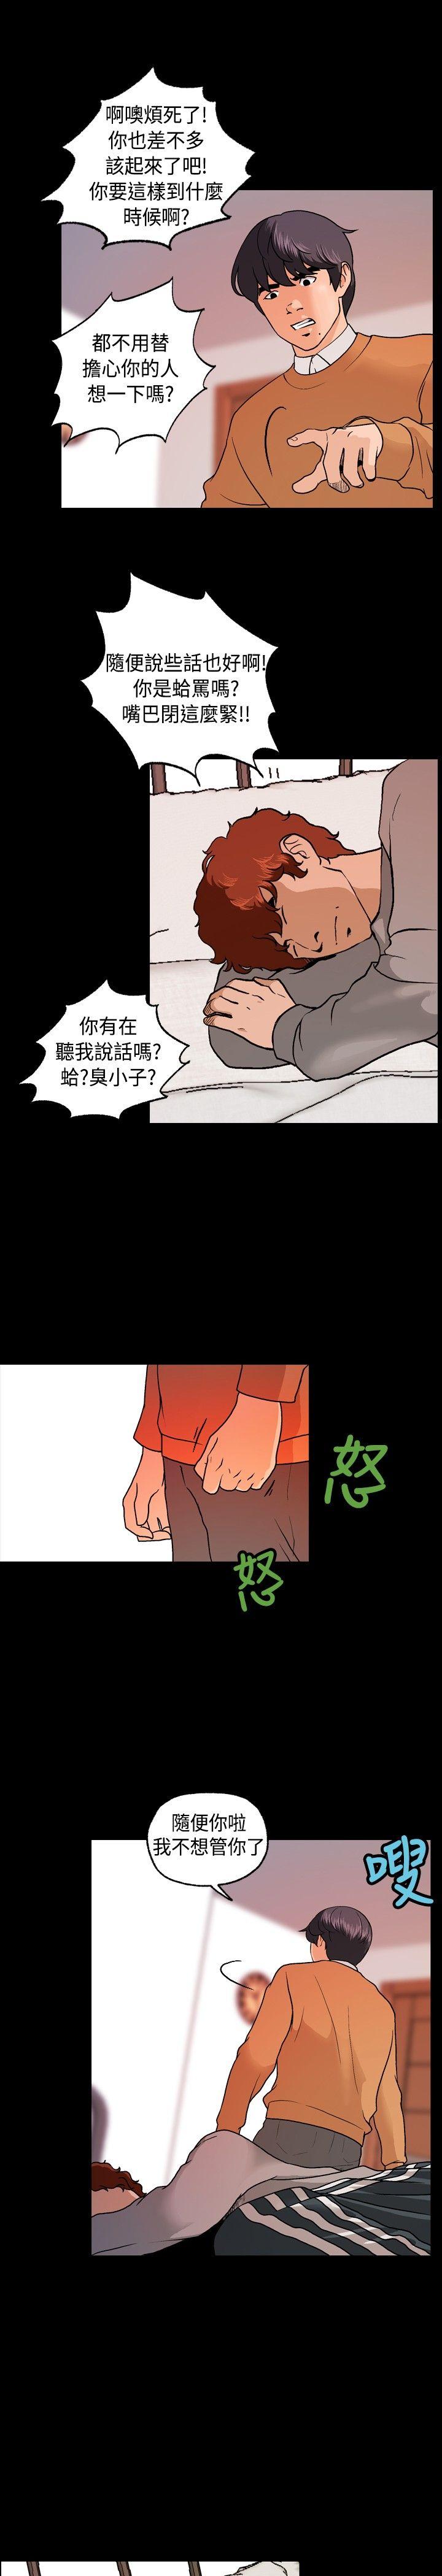 韩国污漫画 蒙面女王 第6话 18